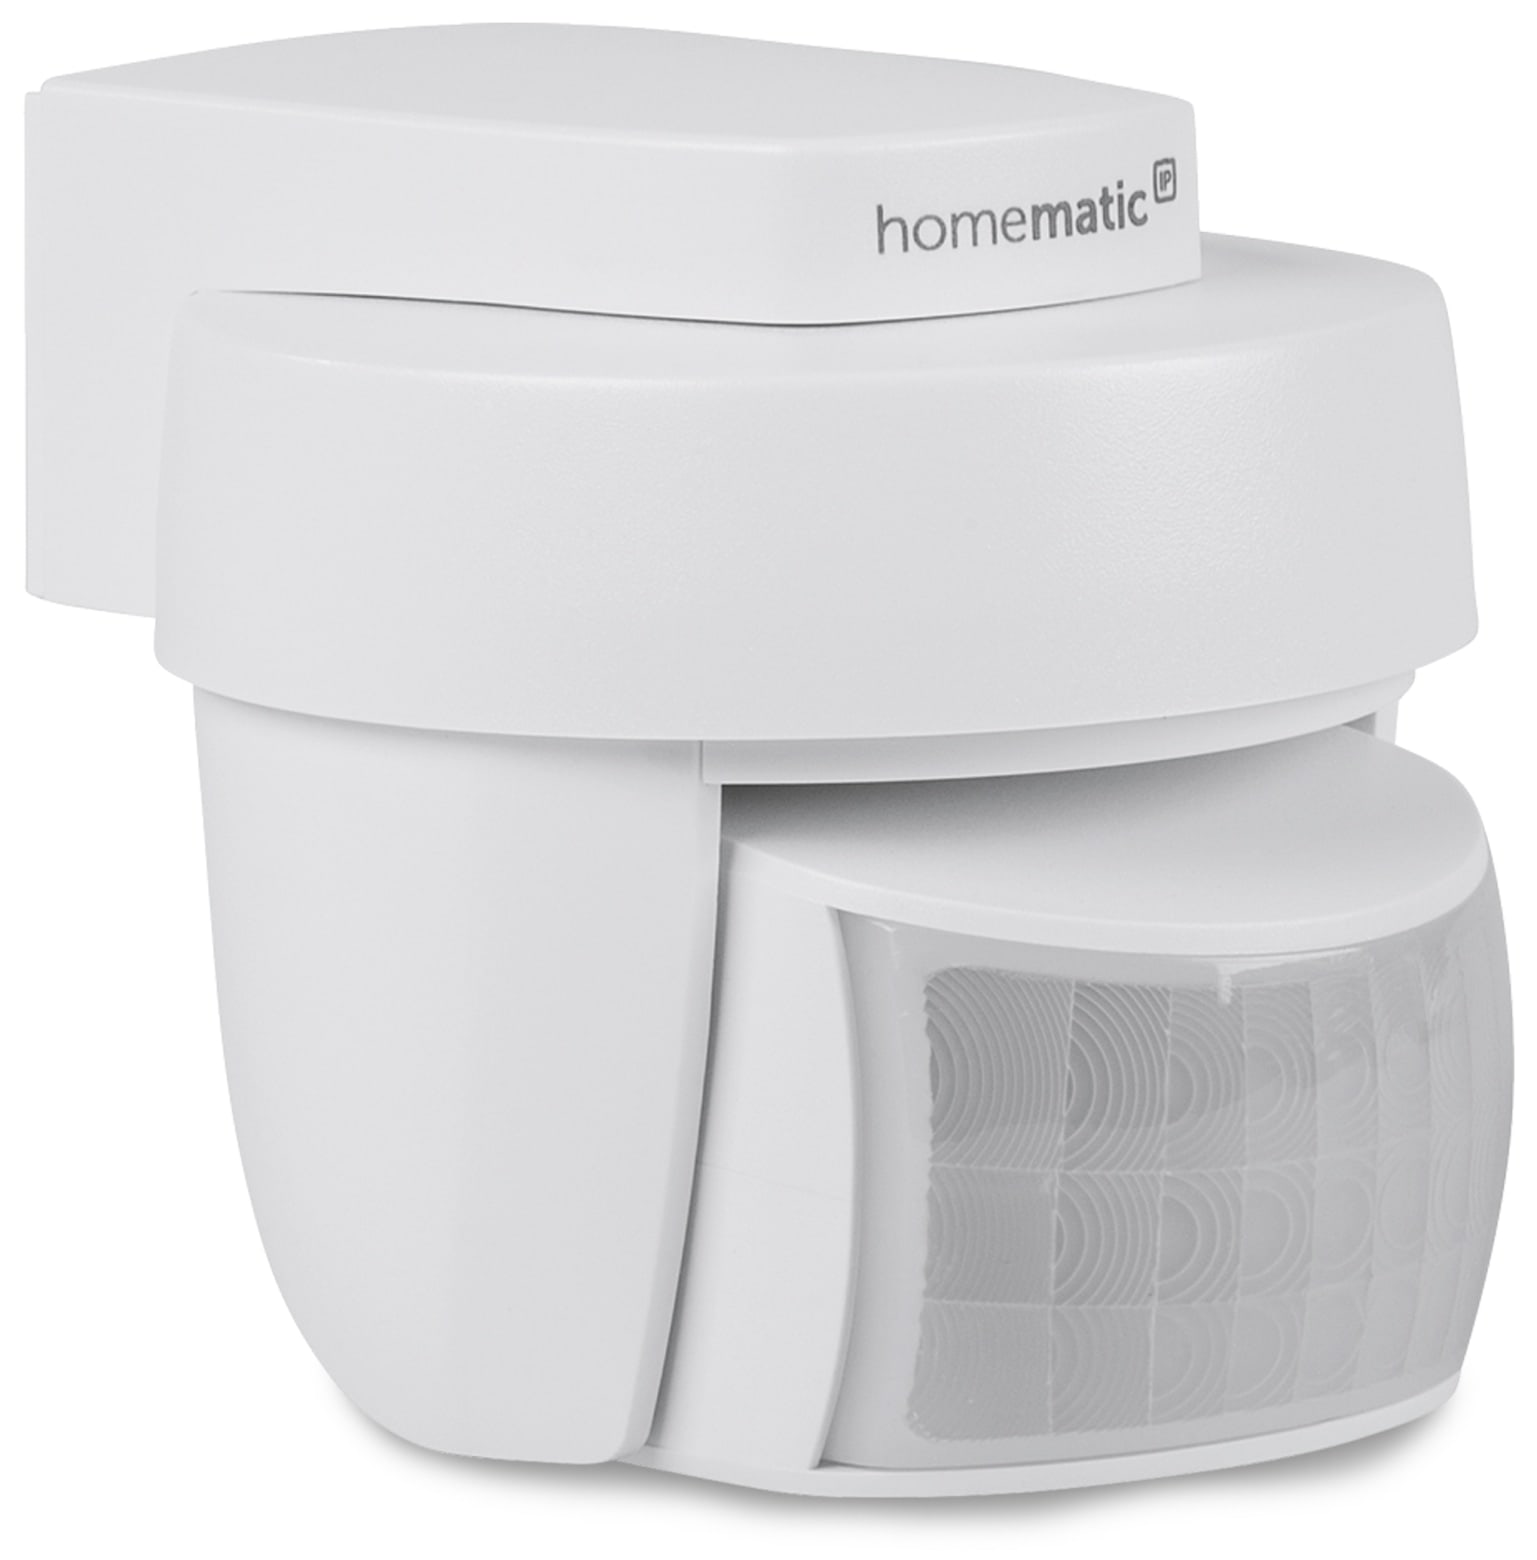 Homematic IP Smart Home 142809A0, Bewegungsmelder außen, weiß